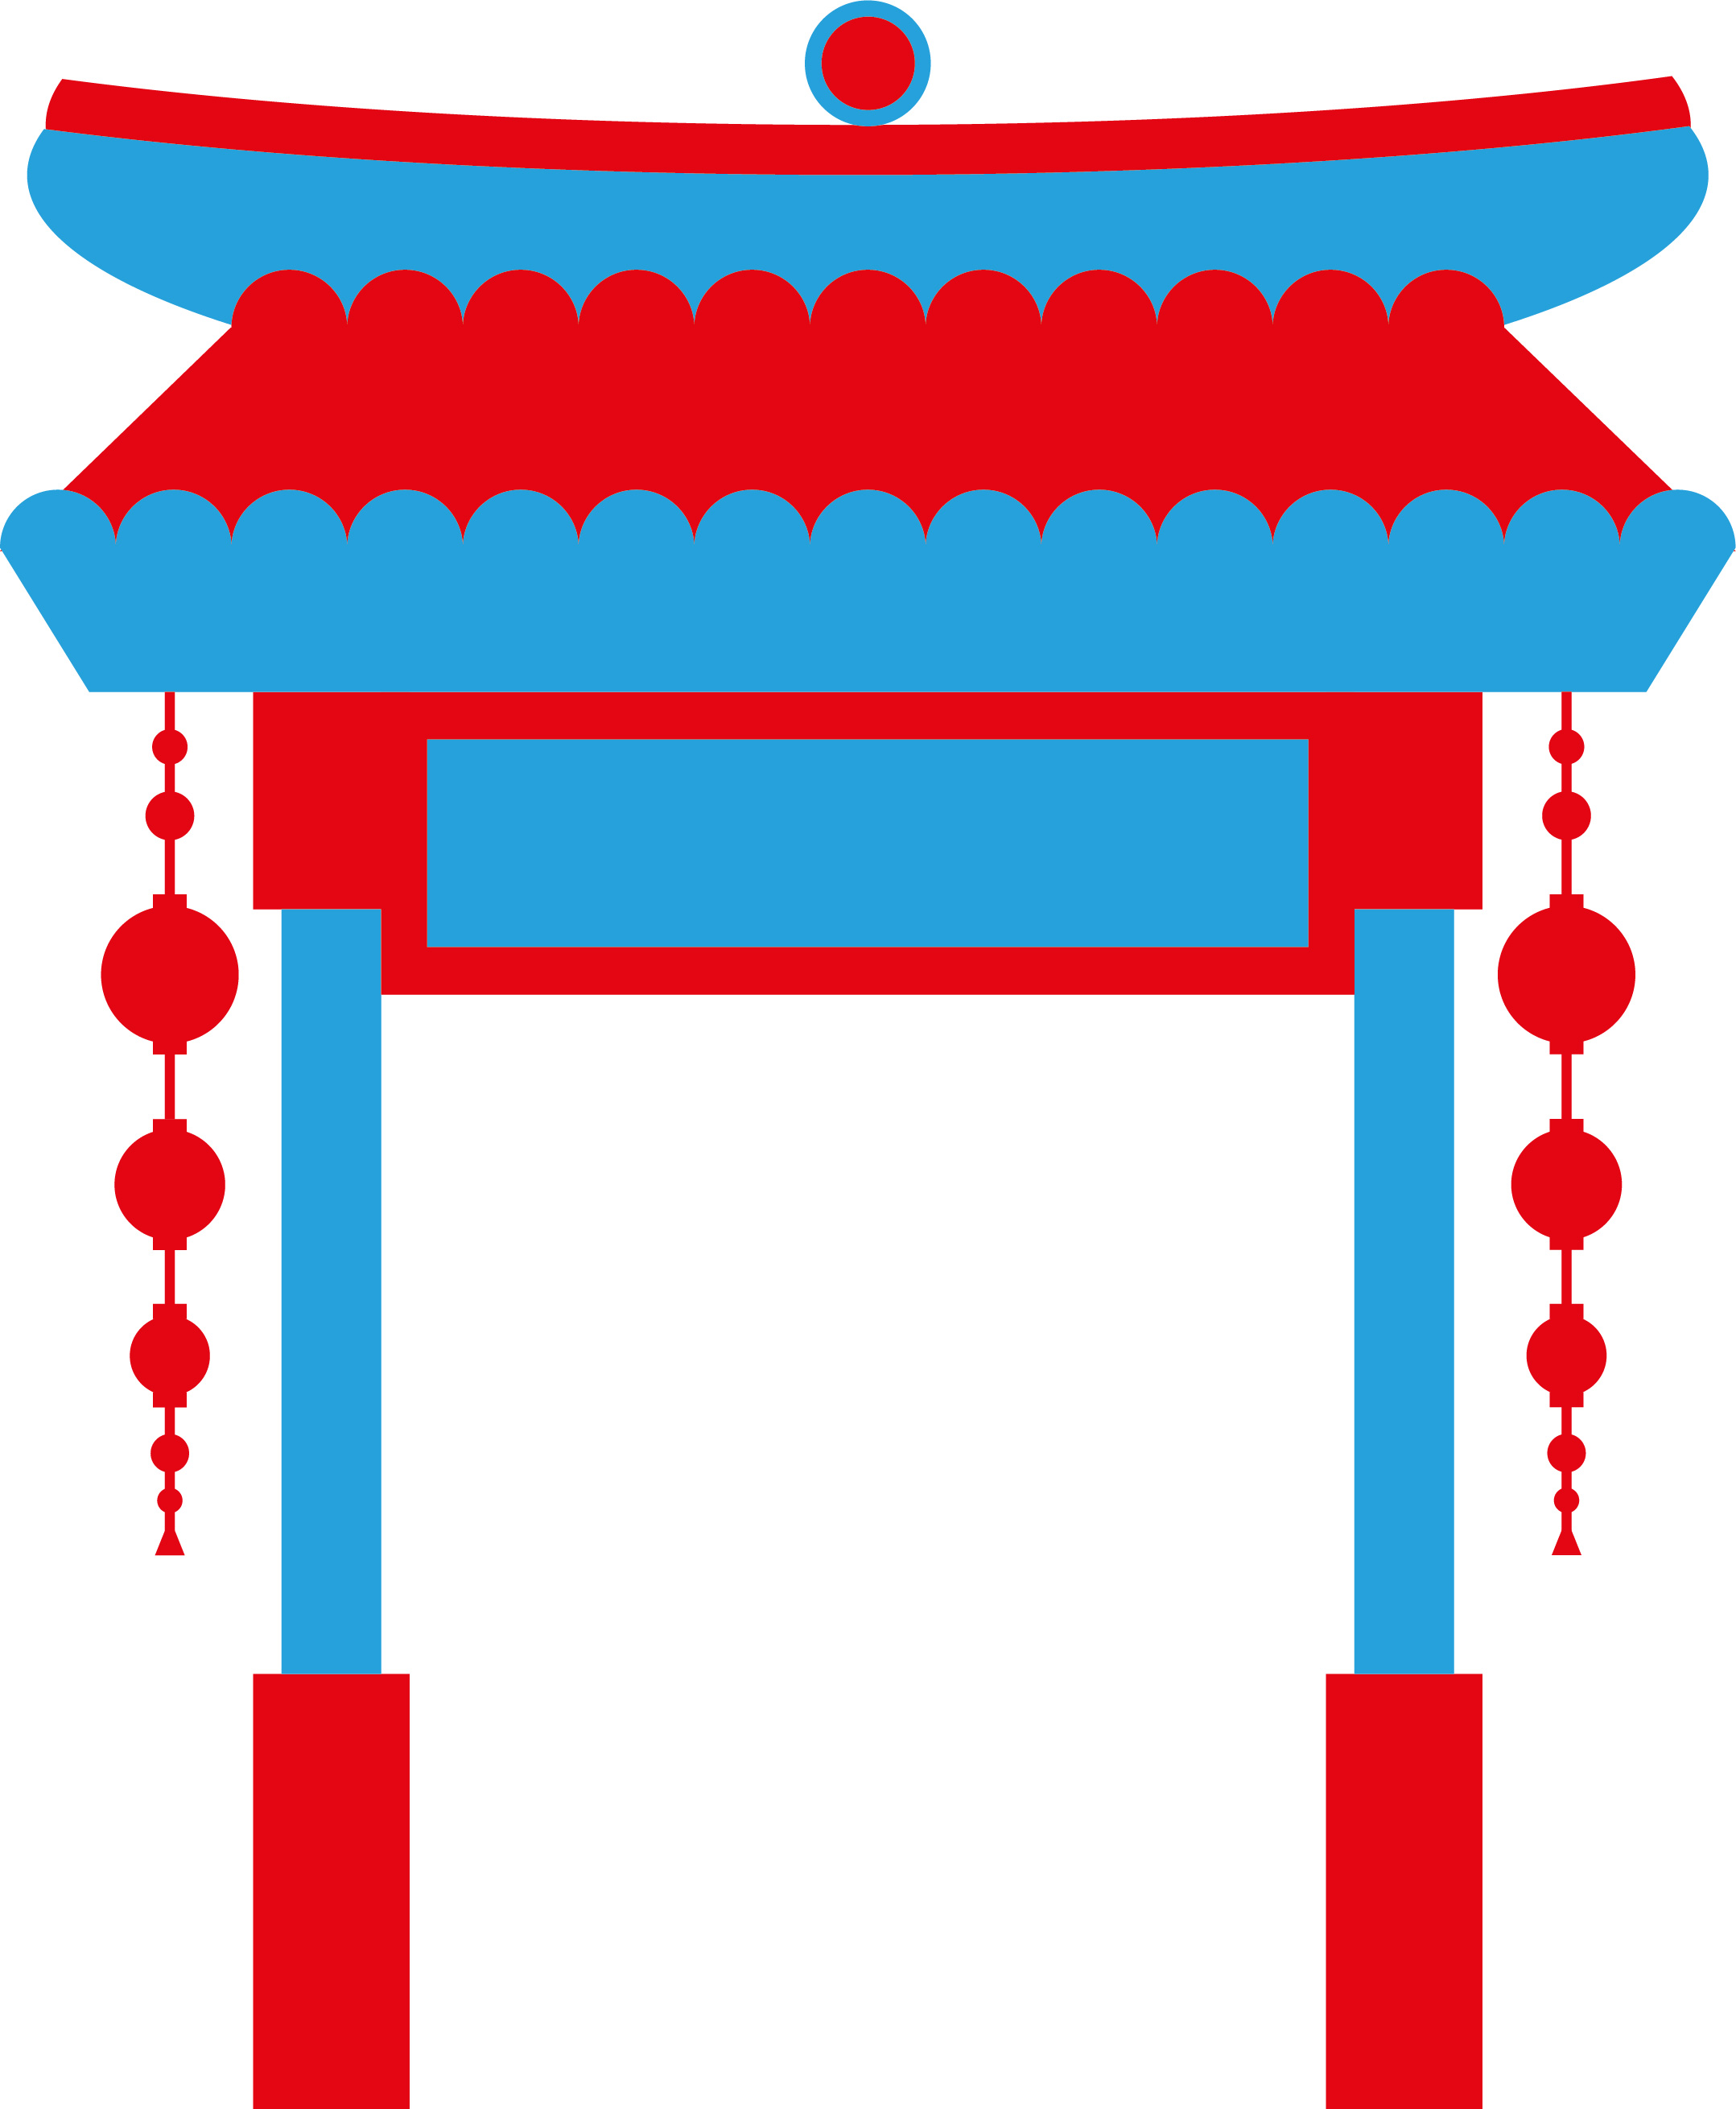 China Career Gateway logo